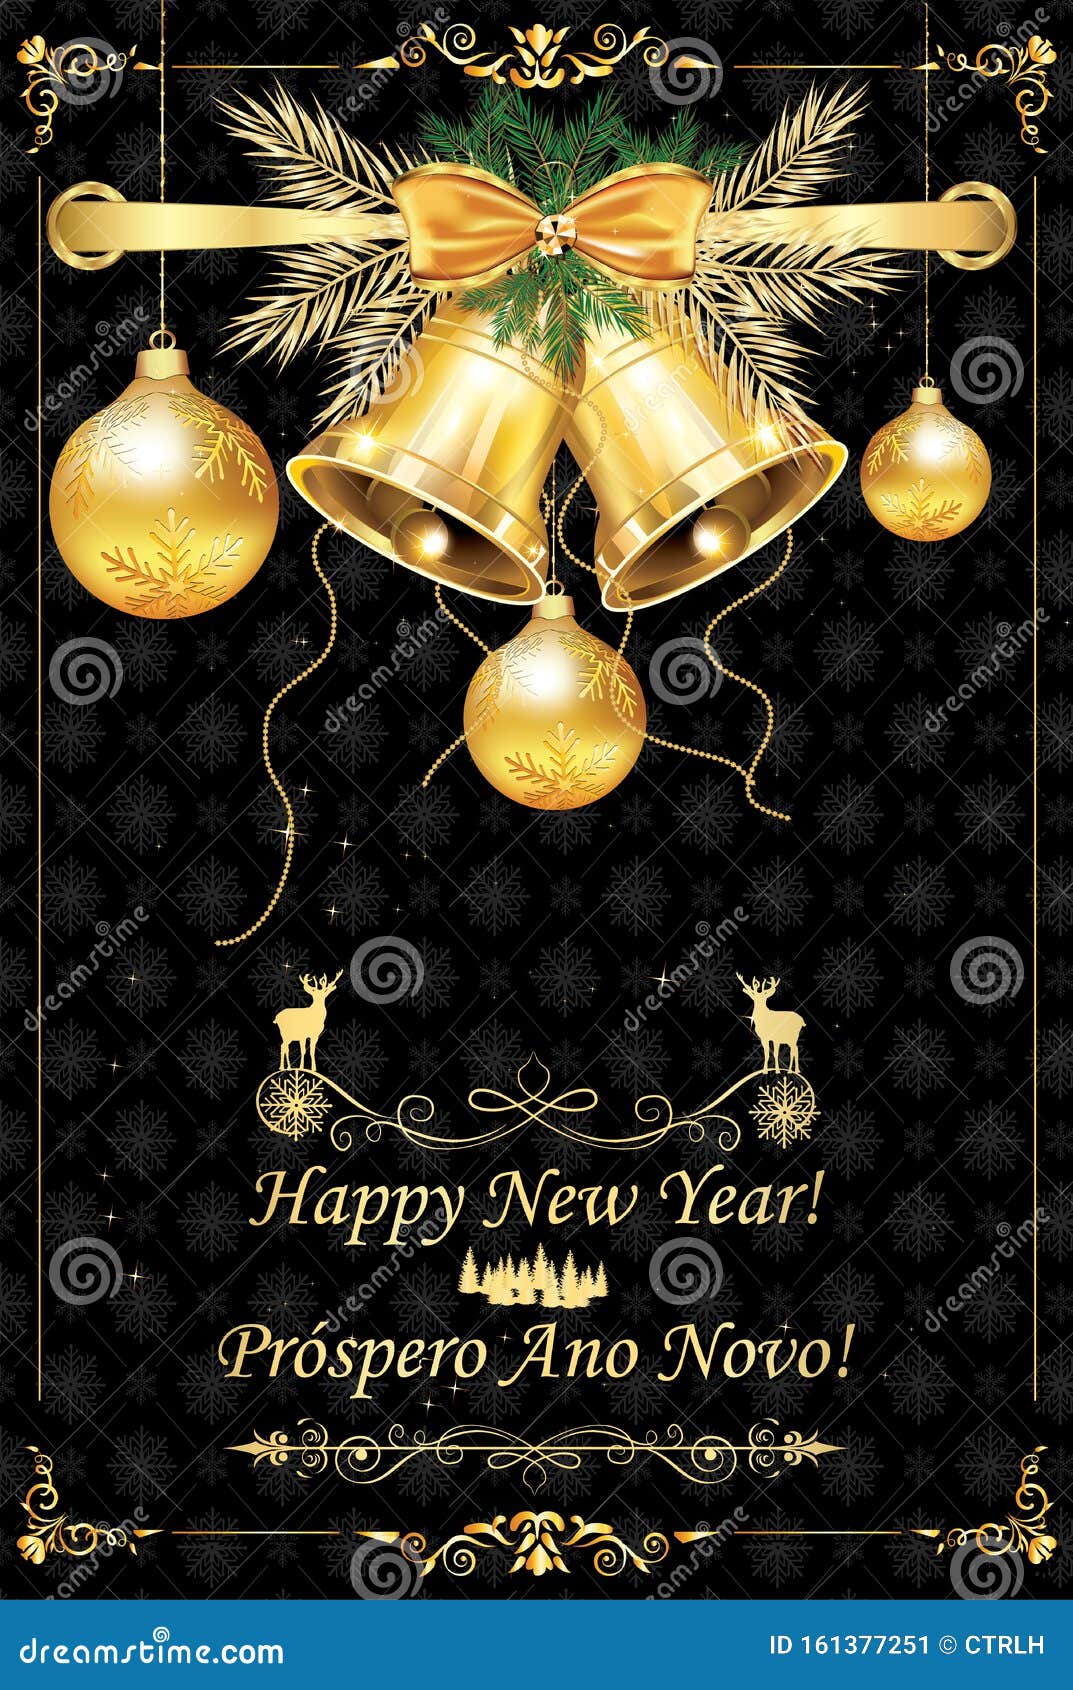 Cartão De Boas-vindas De Ano Novo Com Texto Em Inglês E Português  Ilustração Stock - Ilustração de roxo, portugal: 161377251